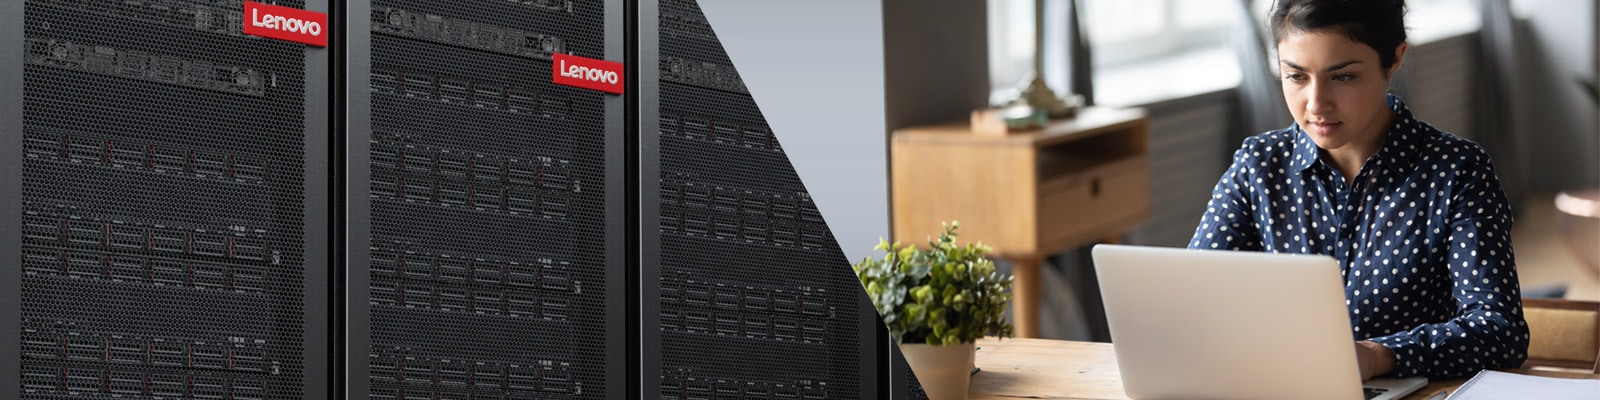 Lenovo TruScale voor gehoste desktopcomputers met Nutanix